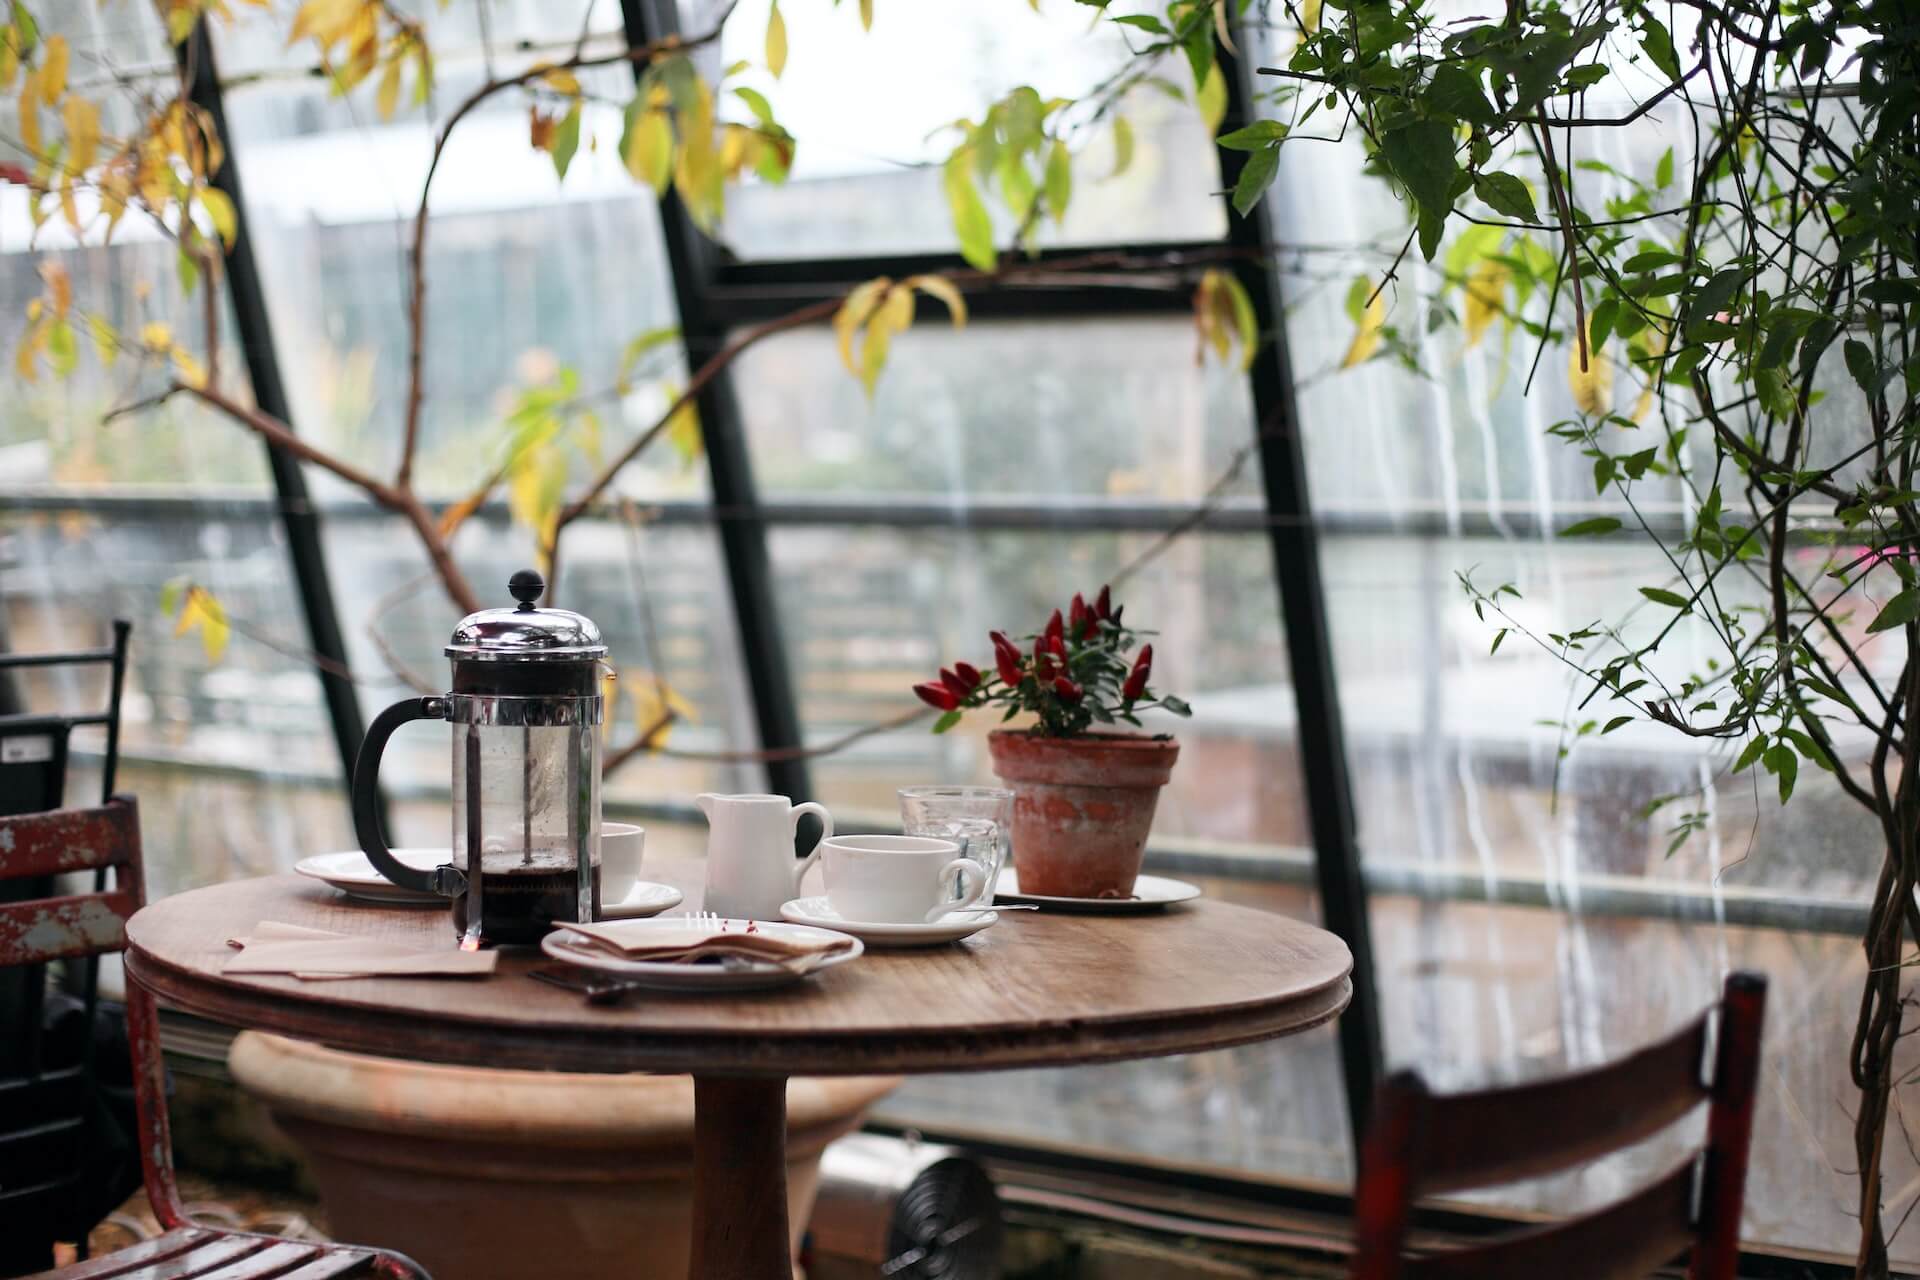 Eigenes Cafe eröffnen: 5 wichtige Faktoren für die Planung